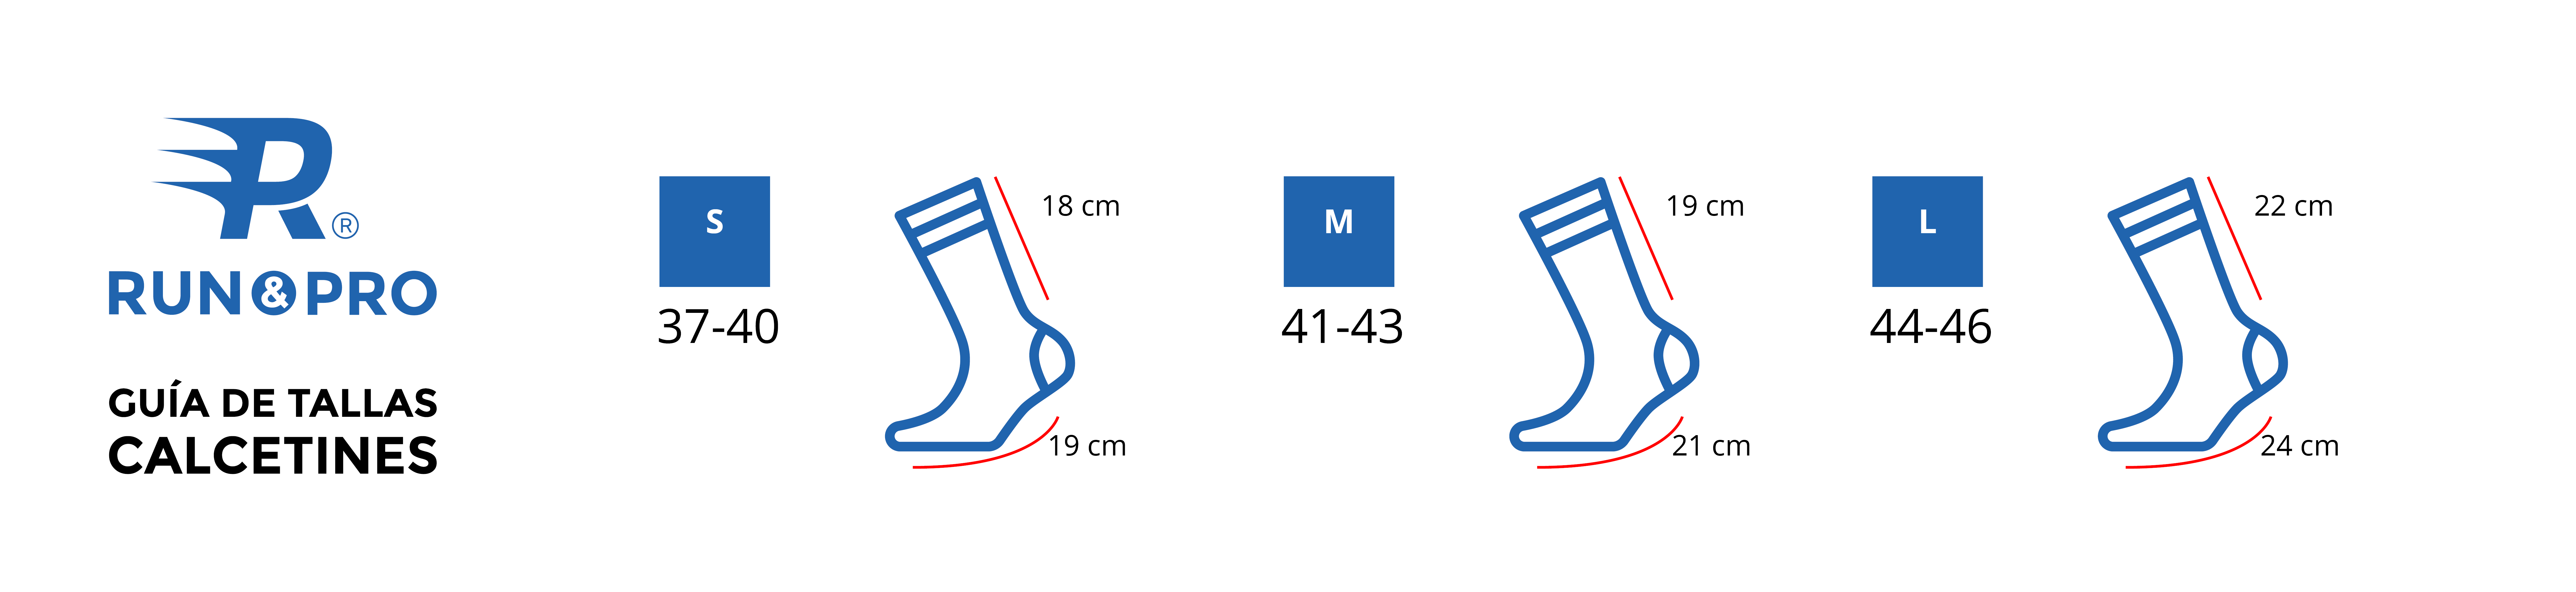 Guía de tallas calcetines Run&Pro